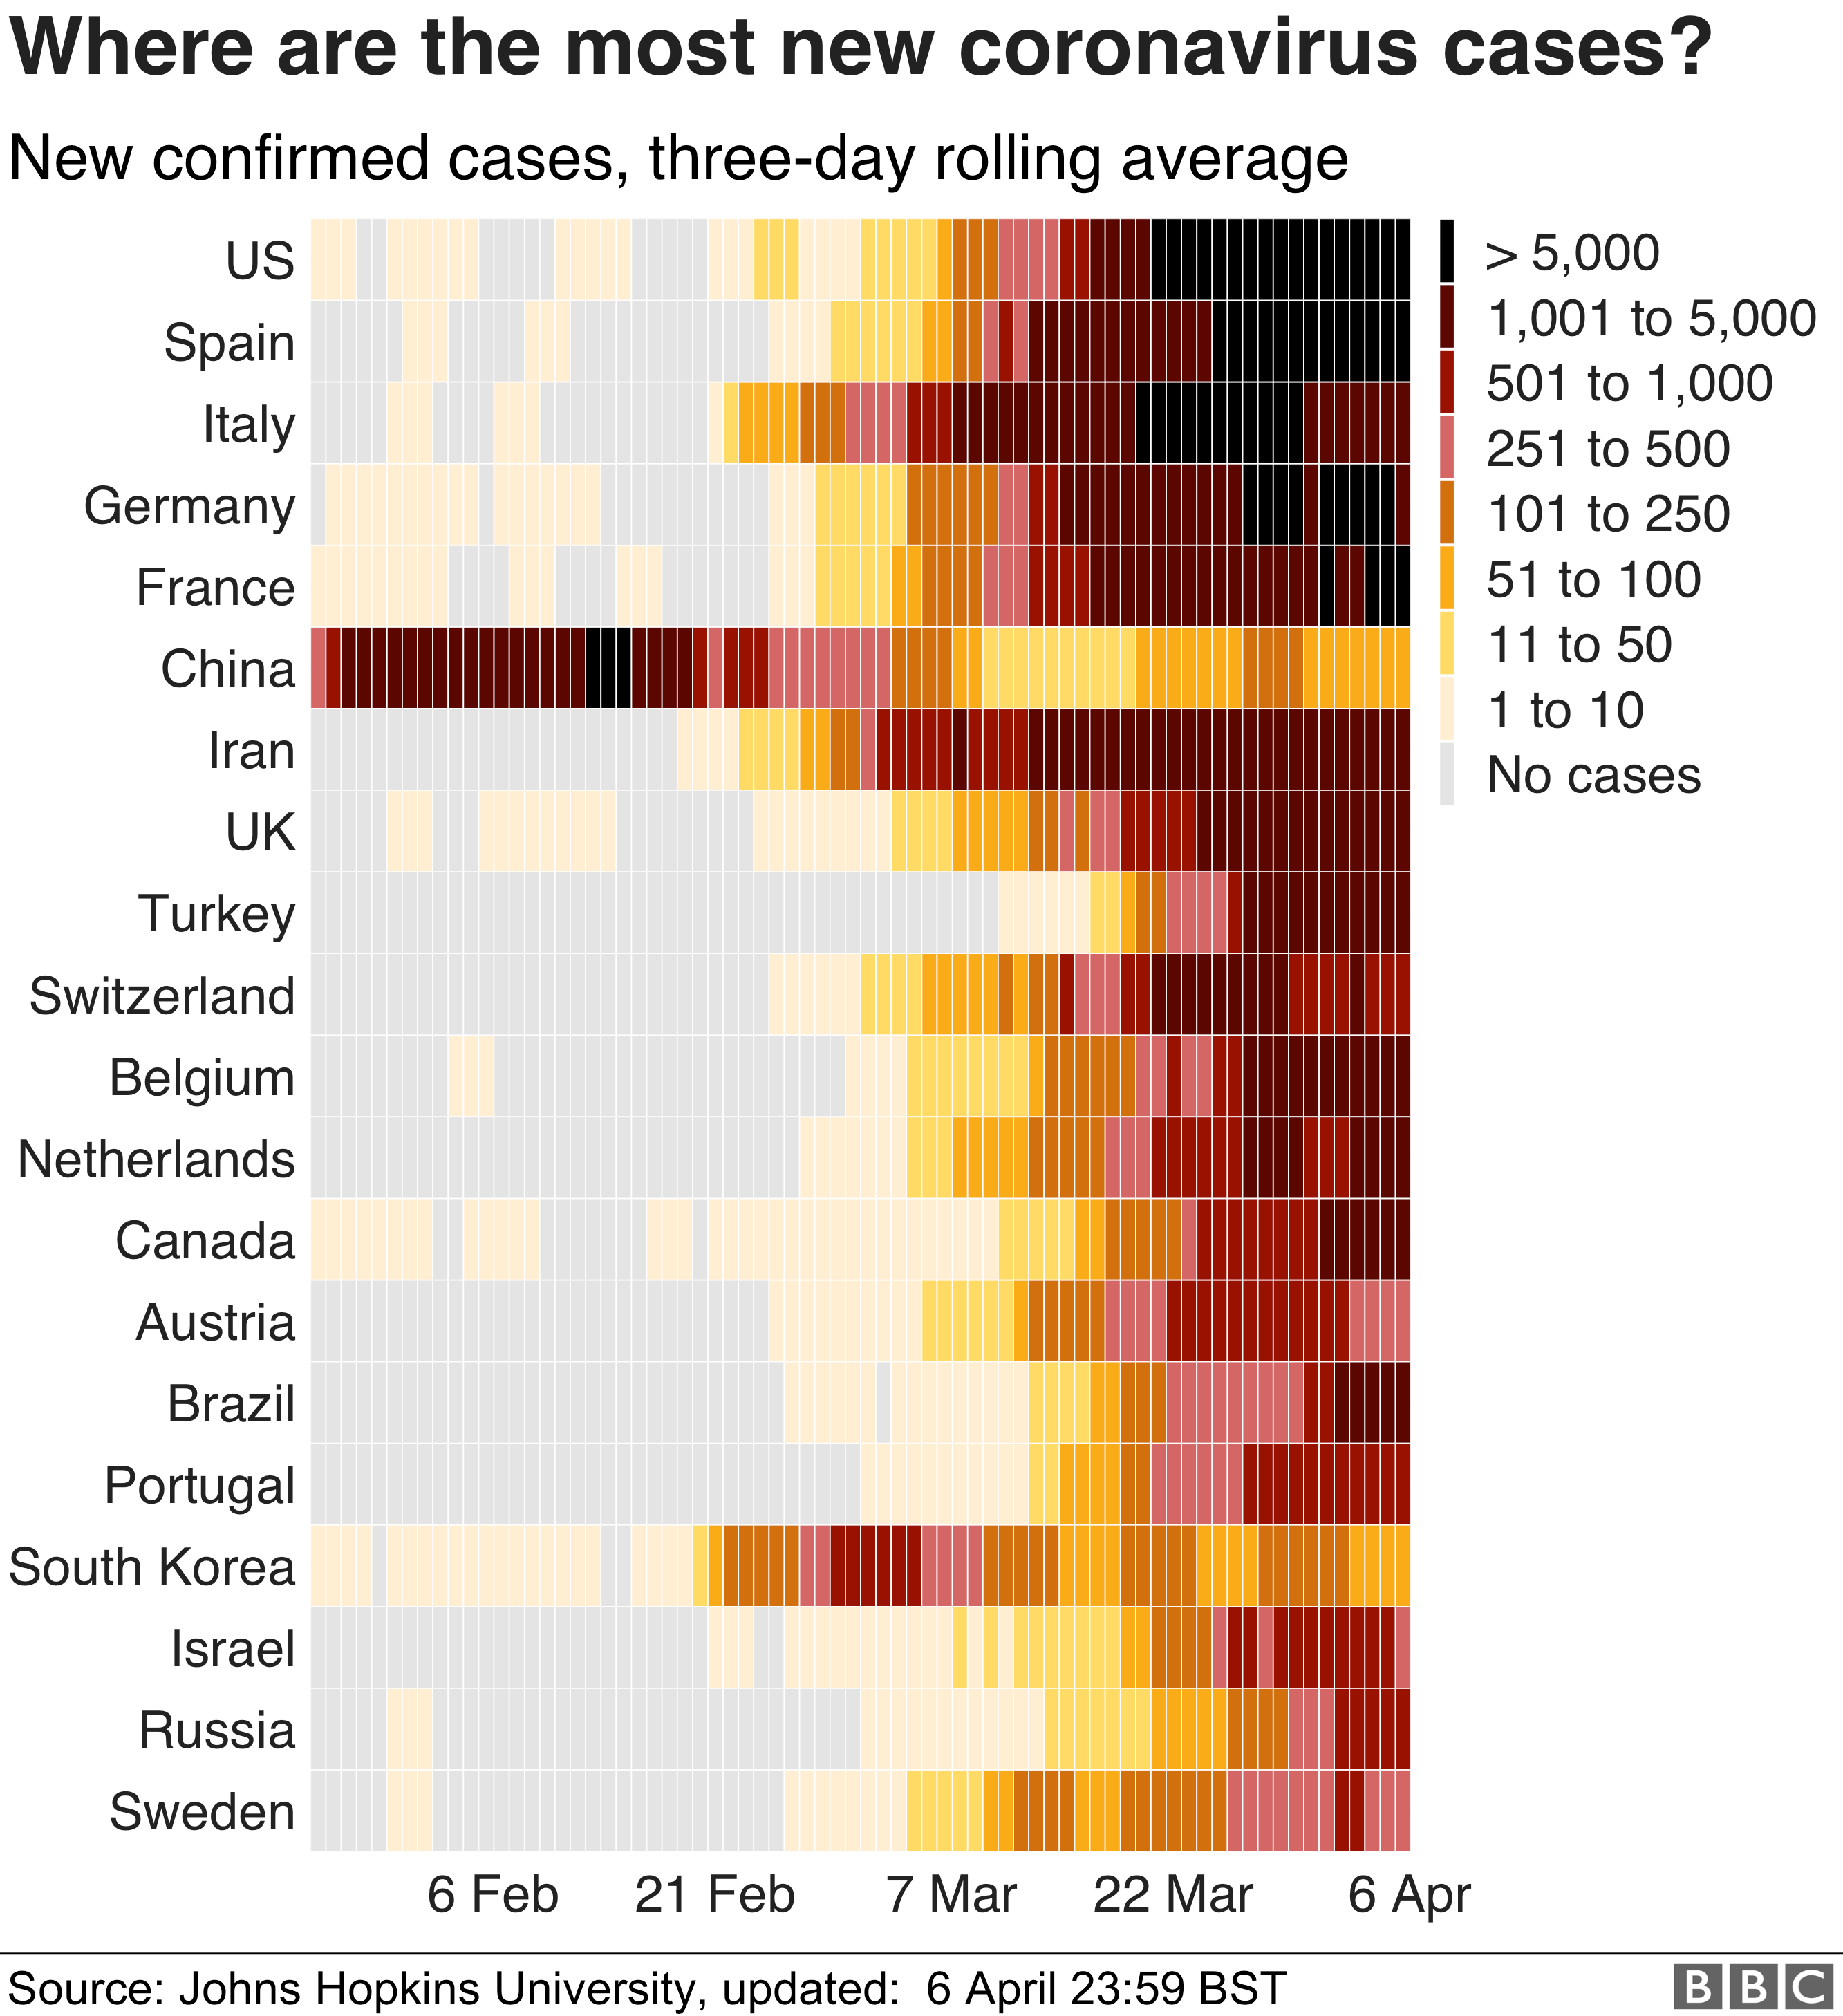 該圖表顯示了前20個國家/地區以及過去幾周中他們感染了多少例冠狀病毒